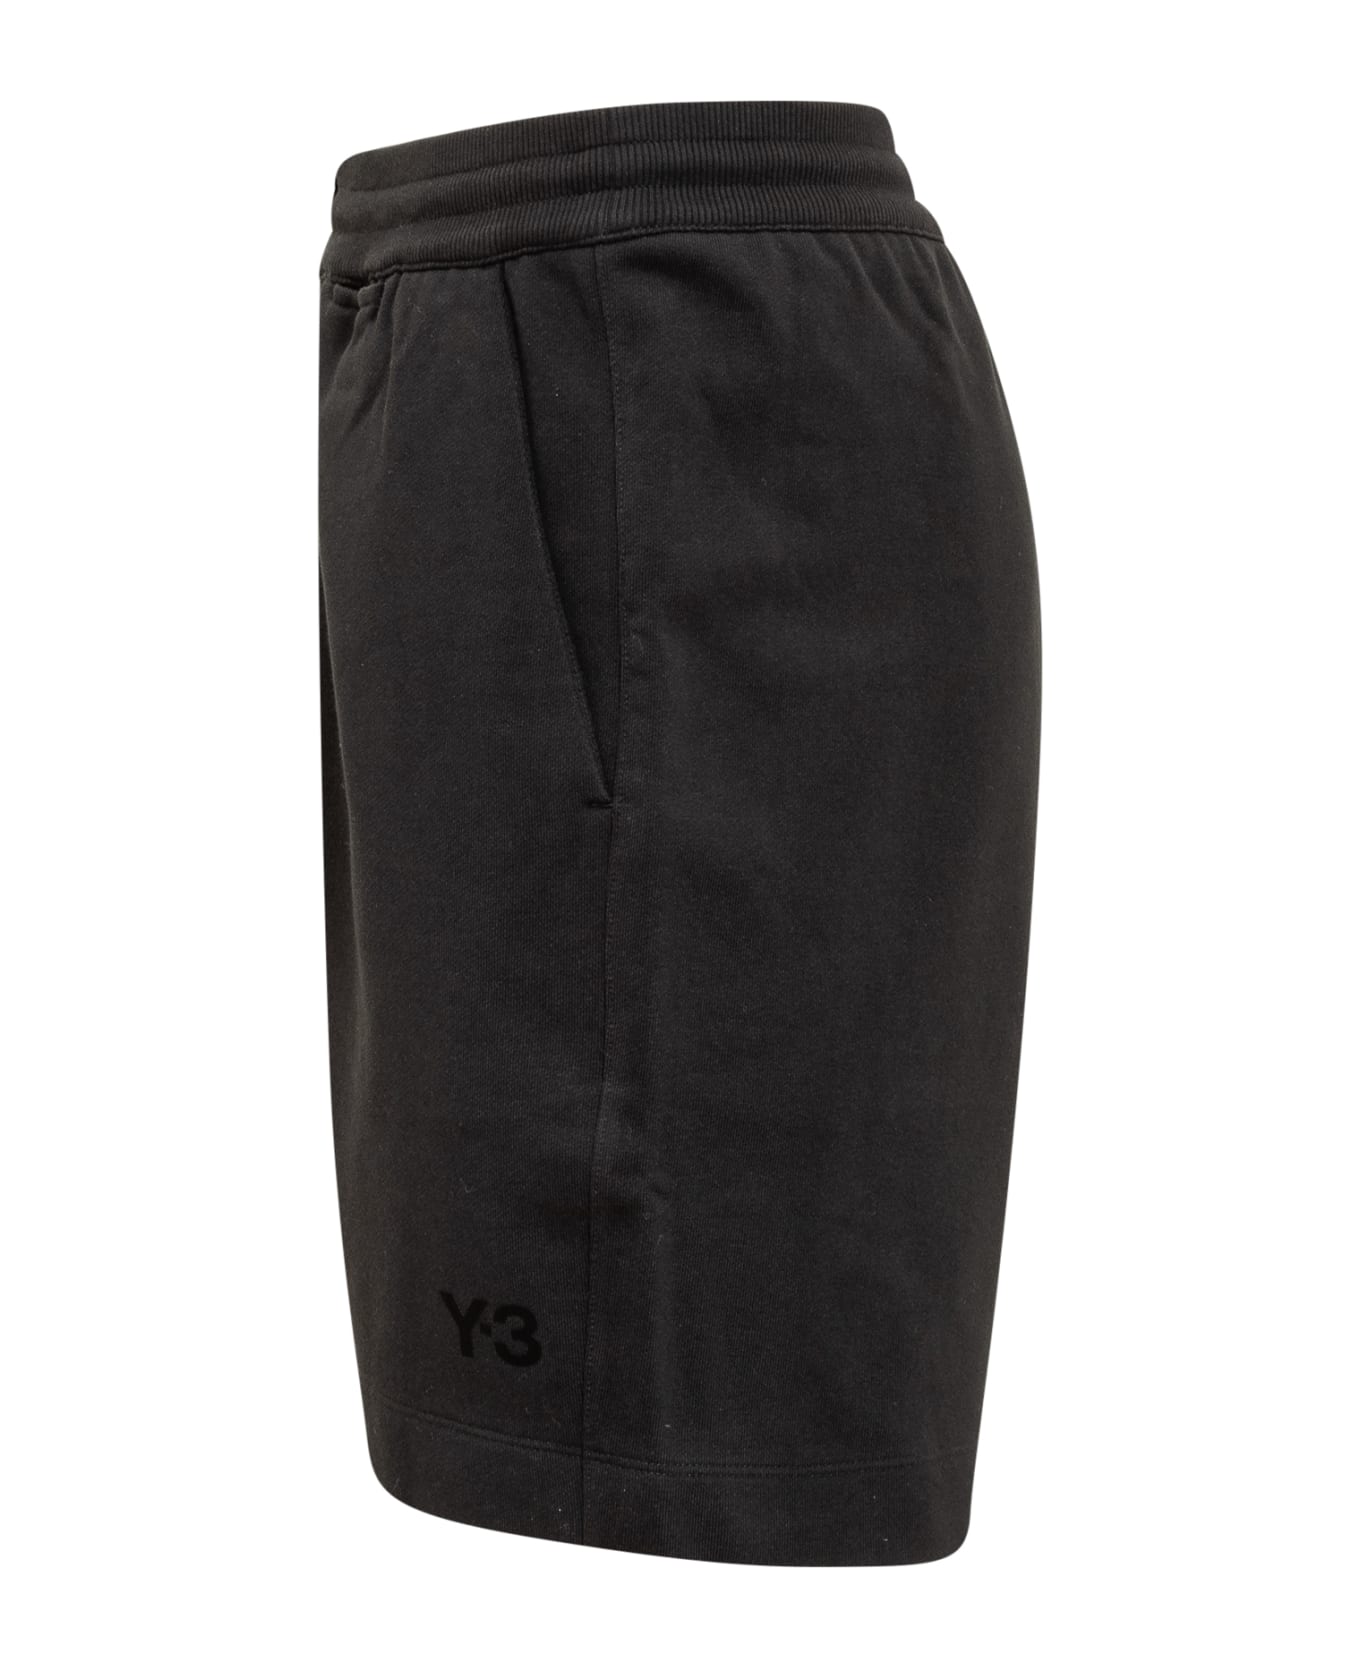 Y-3 Shorts With Logo - BLACK